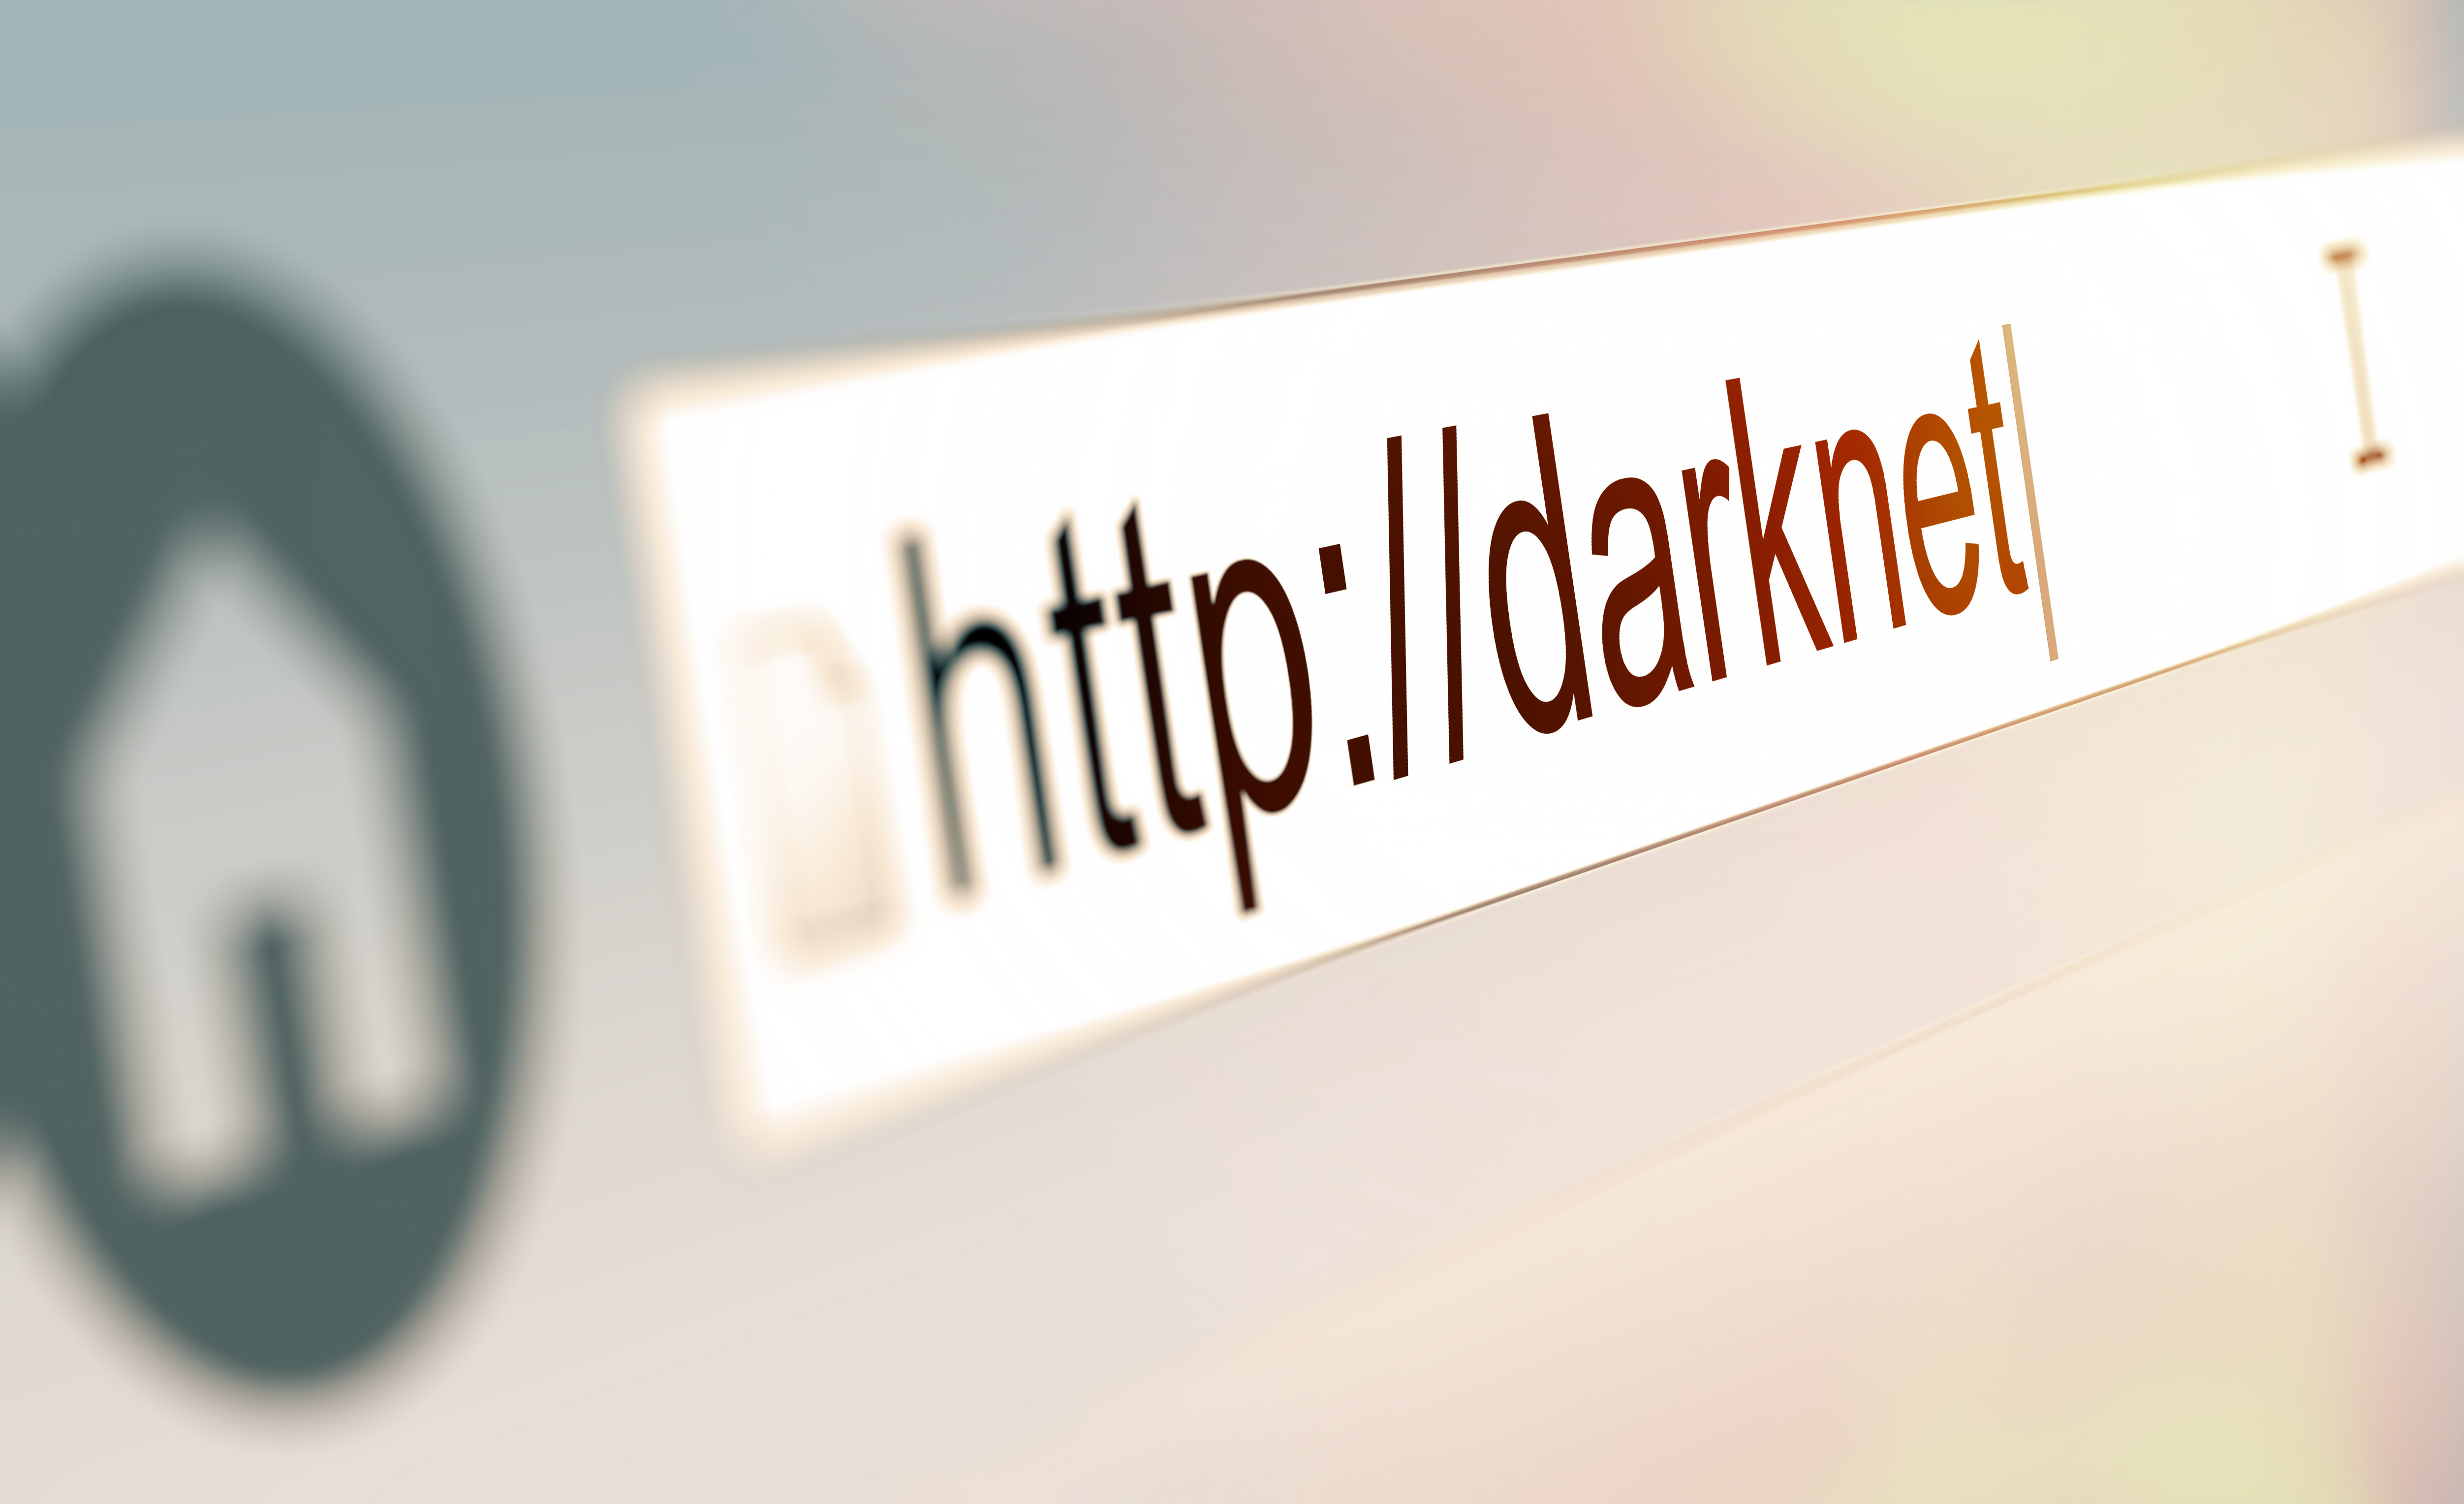 Alphabay Market Url Darknet Adresse